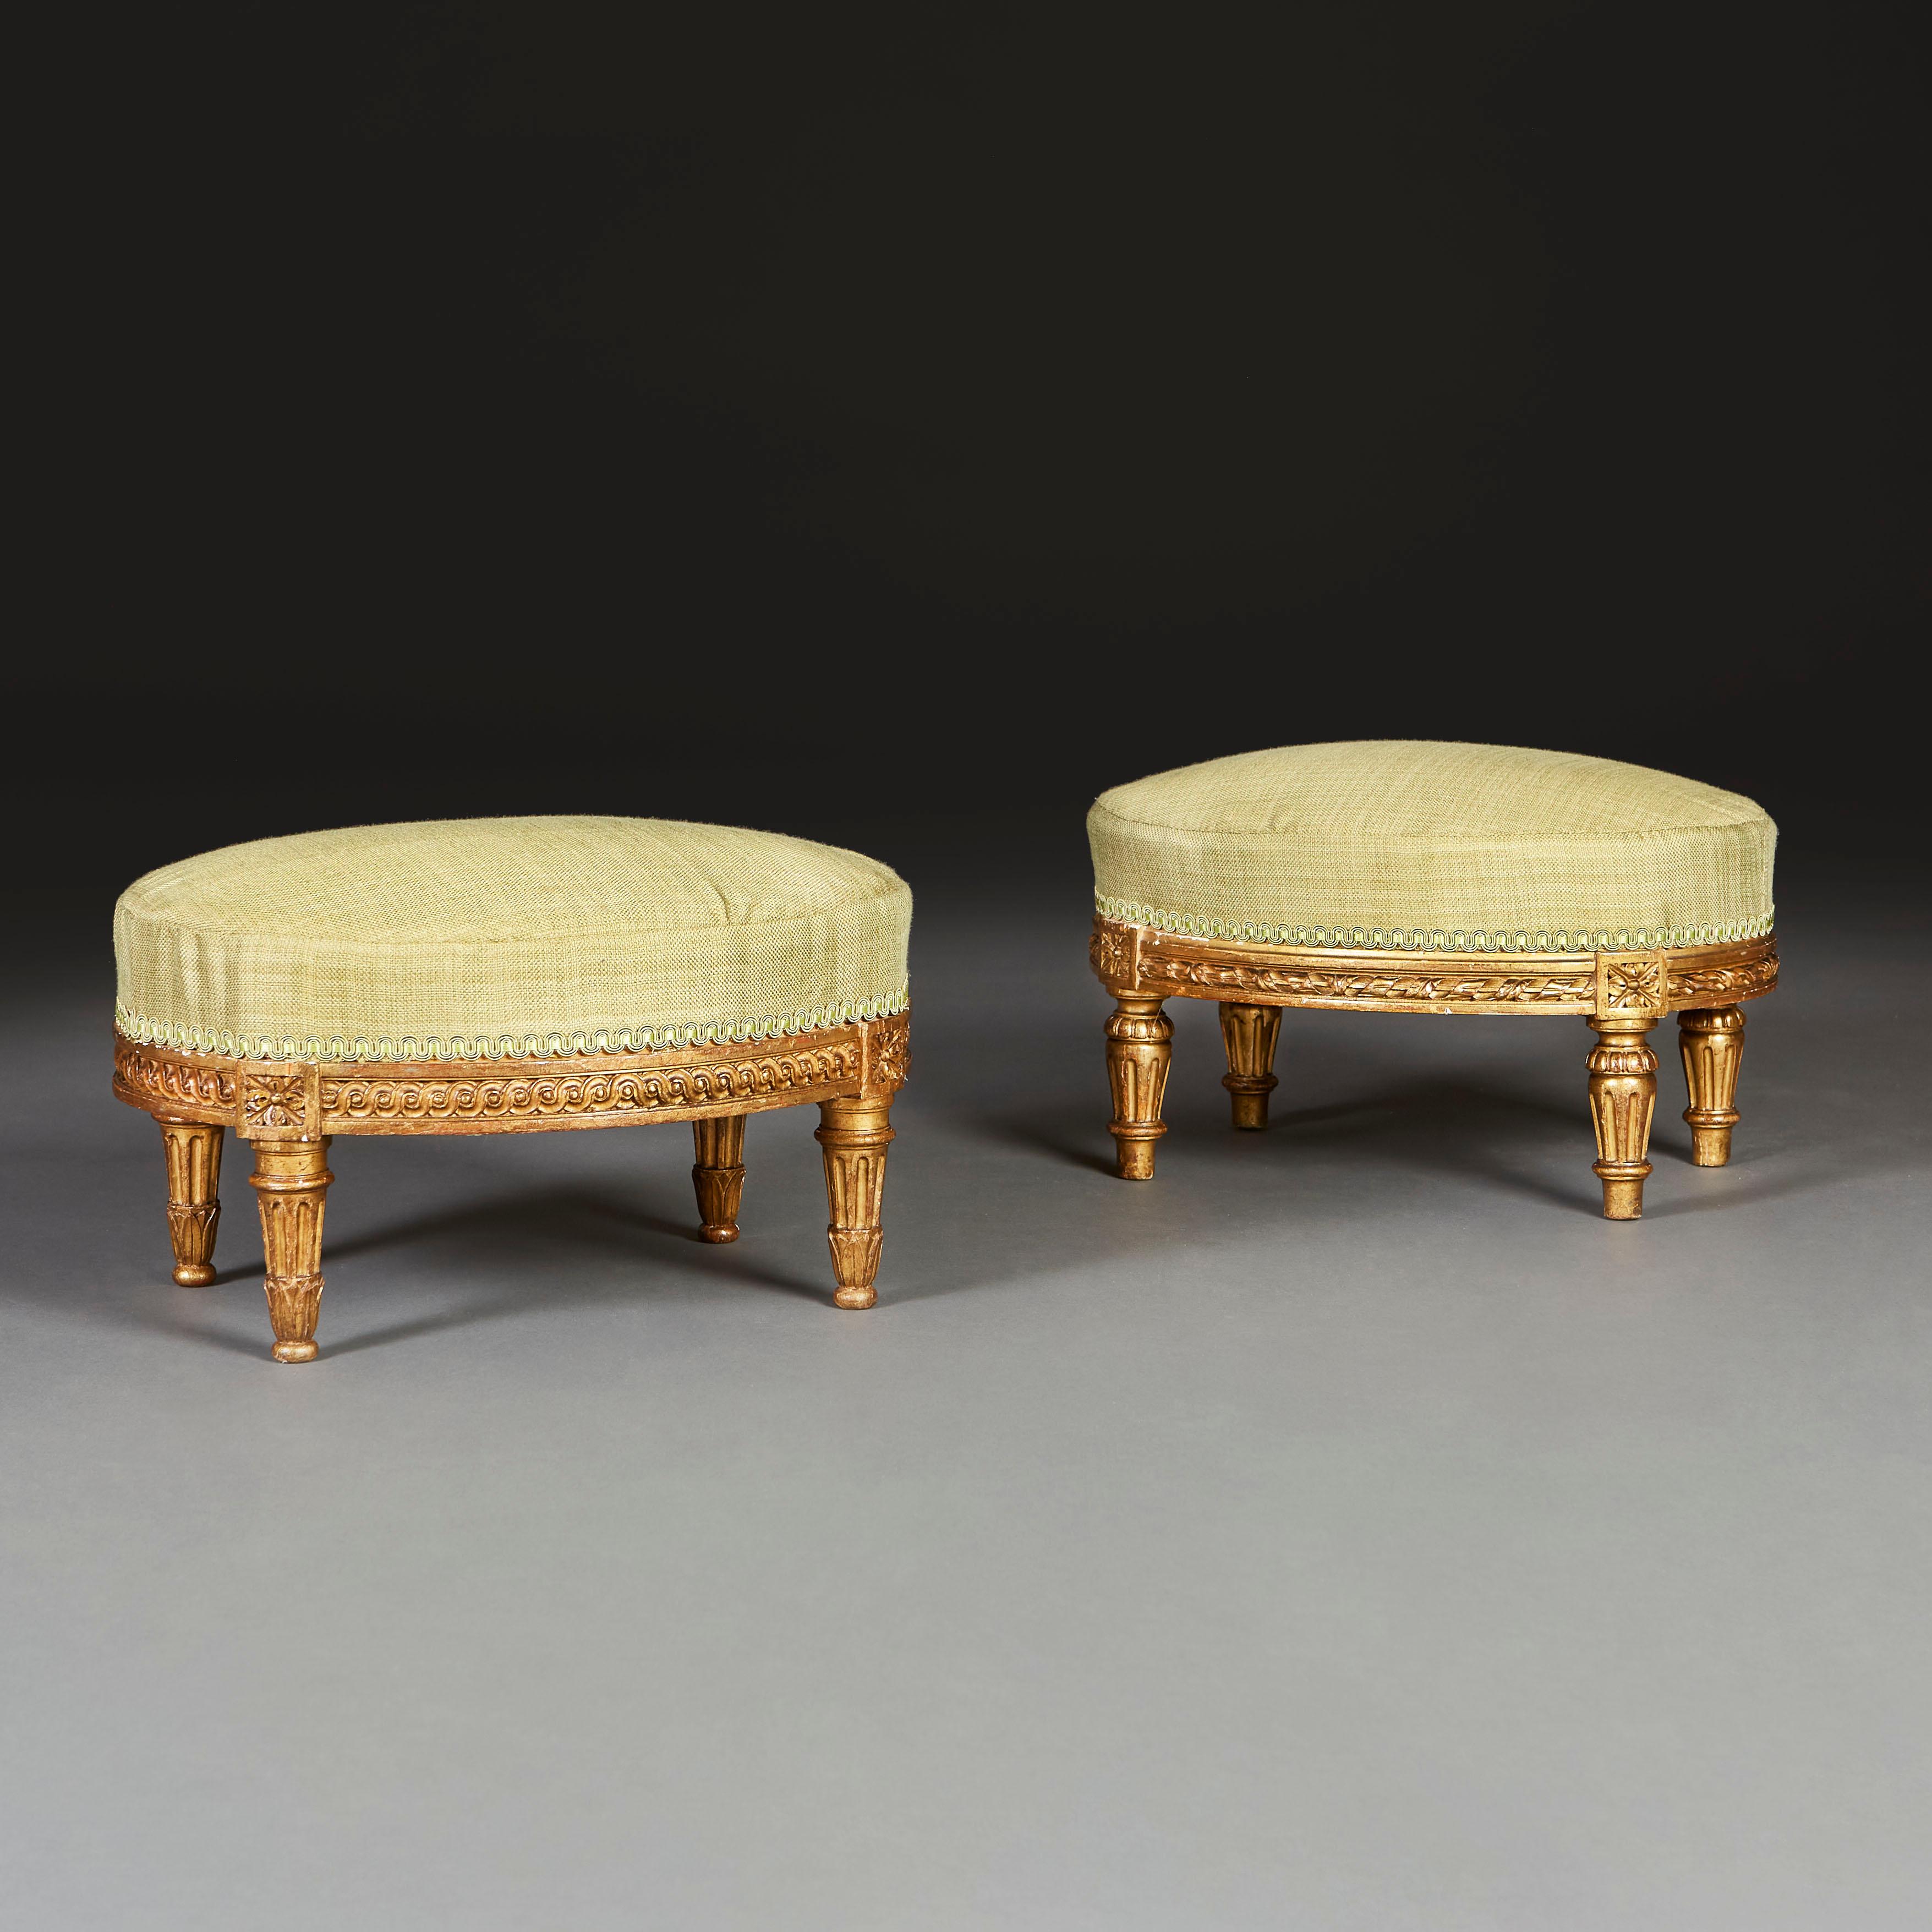 Paire de poufs en bois doré du XVIIIe siècle, de forme ovale, avec un décor guilloché sculpté sur la barre d'assise, entrecoupé de paterae au-dessus de quatre pieds godronnés et effilés. Aujourd'hui, il est recouvert de soie verte. Avec les marques